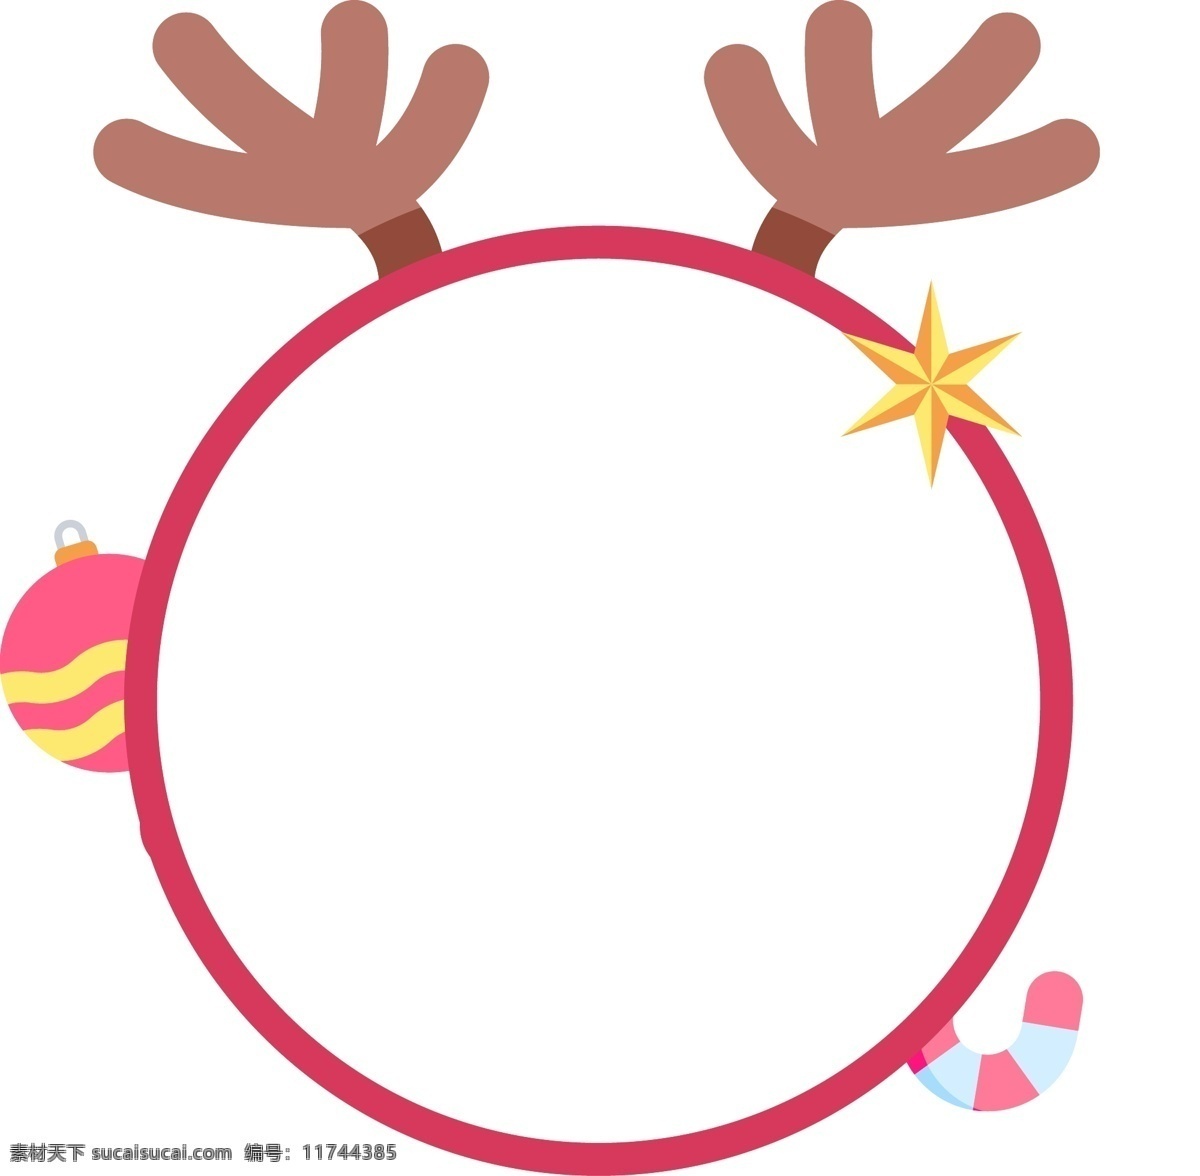 简约 风 圣诞节 鹿角 边框 元素 节日 礼物 标签 christmas 过节 快乐 活动